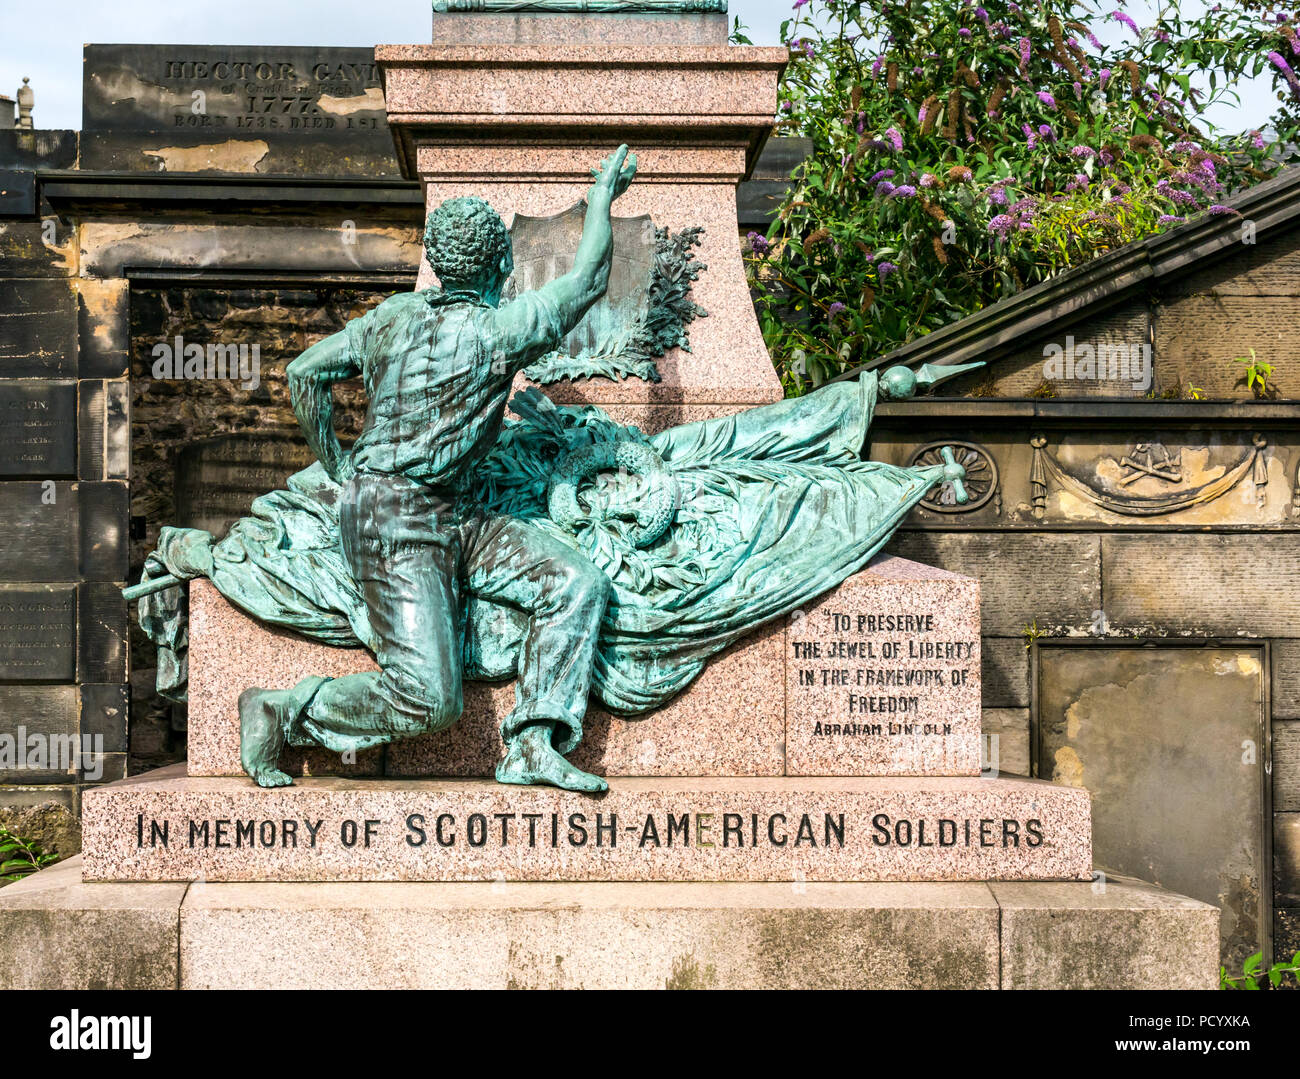 American Memorial écossais, ancien terrain Achat Calton, commémore écossais qui se sont battus sur le côté de l'Union européenne en guerre civile américaine. Édimbourg, Écosse, Royaume-Uni Banque D'Images